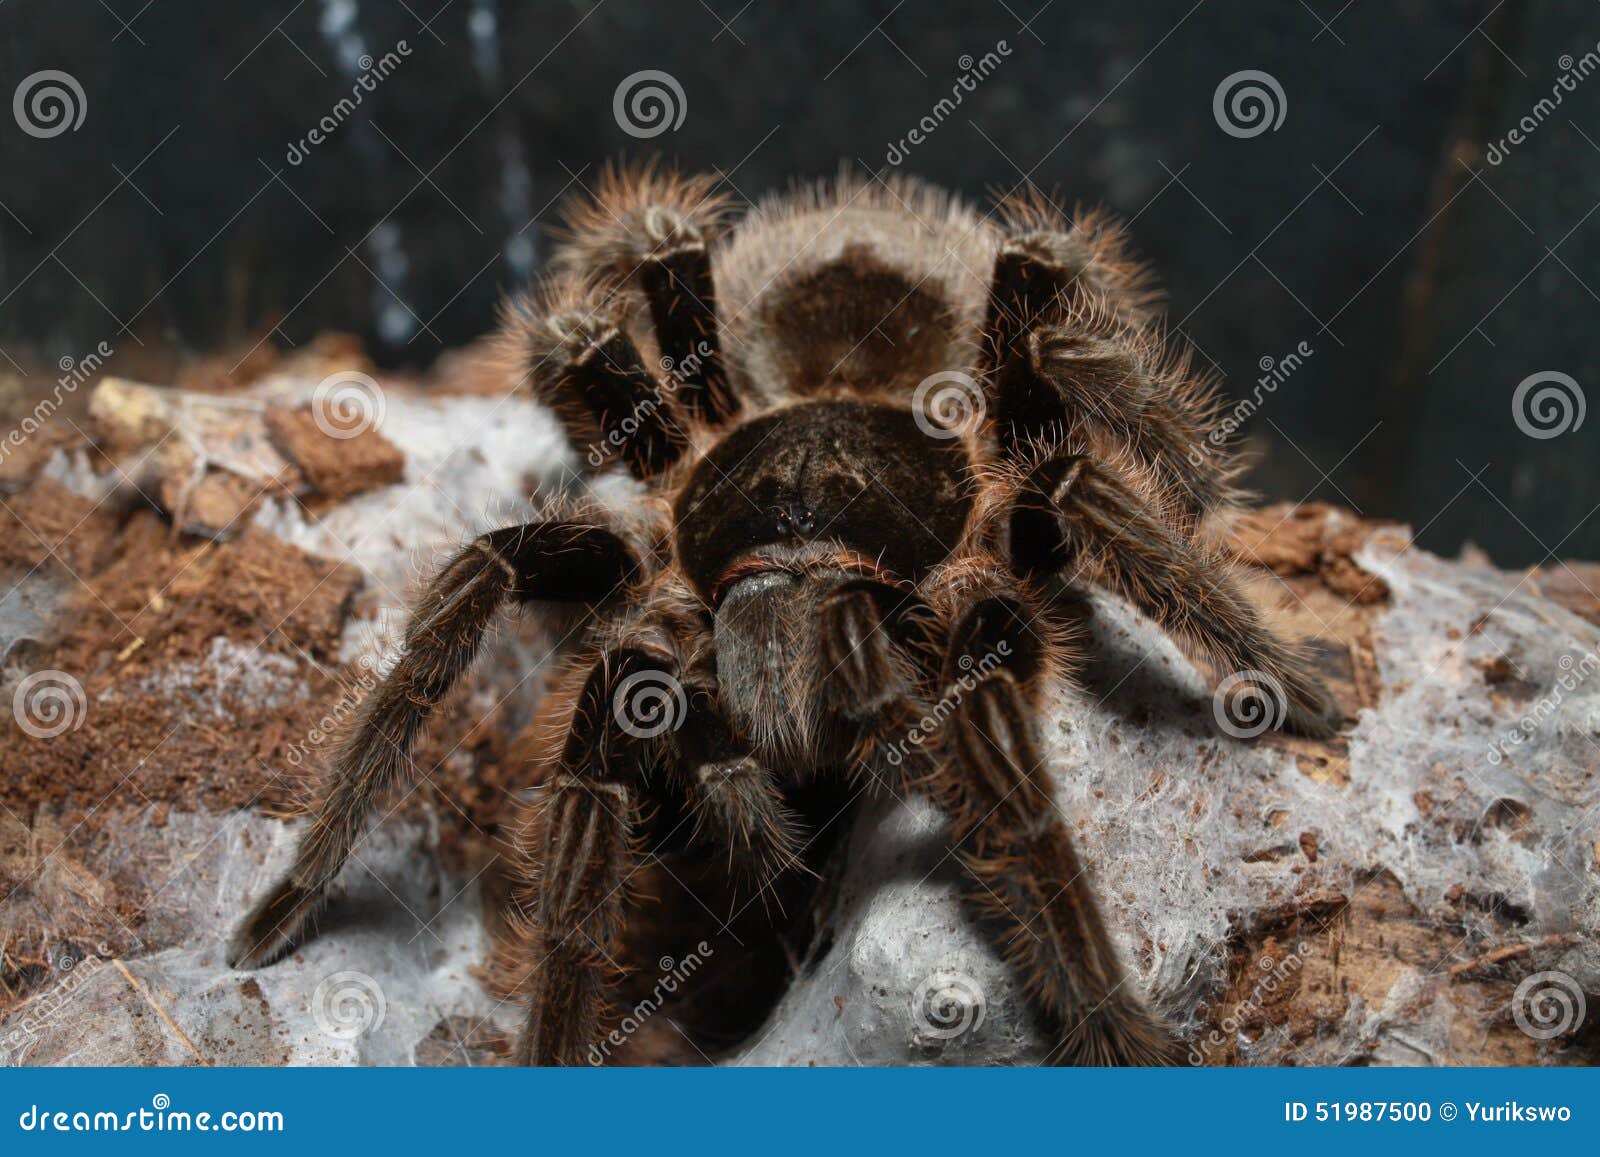 Tarantula stock photo. Image of arachnophobia, animals - 51987500